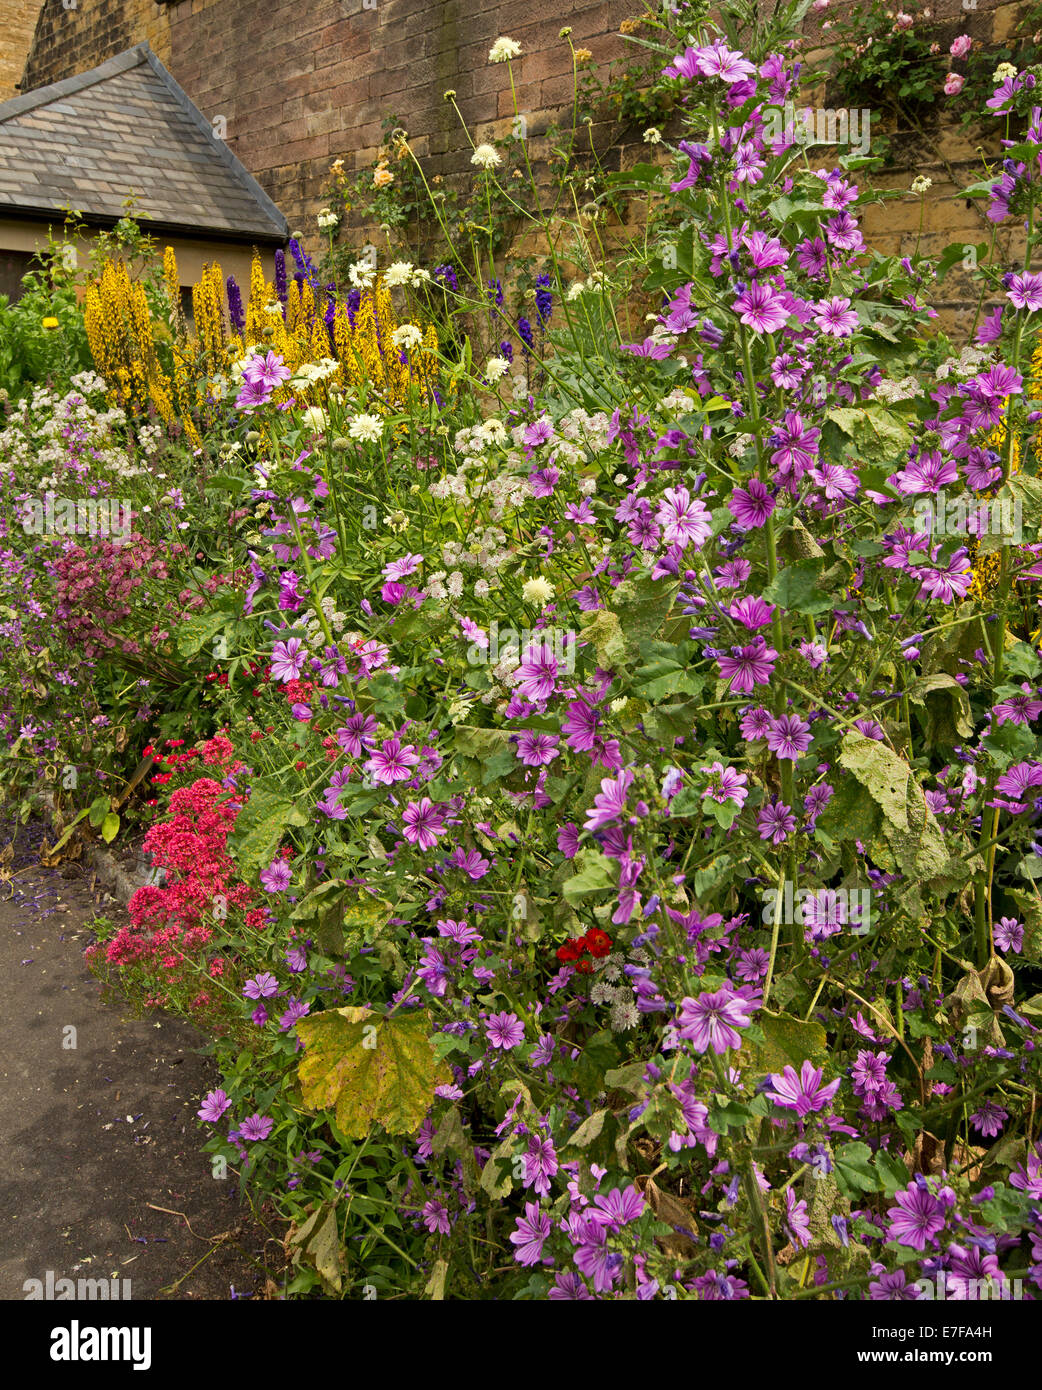 Bunter Frühling Display groß Blumen und Laub in krautigen Grenze neben Steinmauer im Bad Garten, Bakewell, England Stockfoto